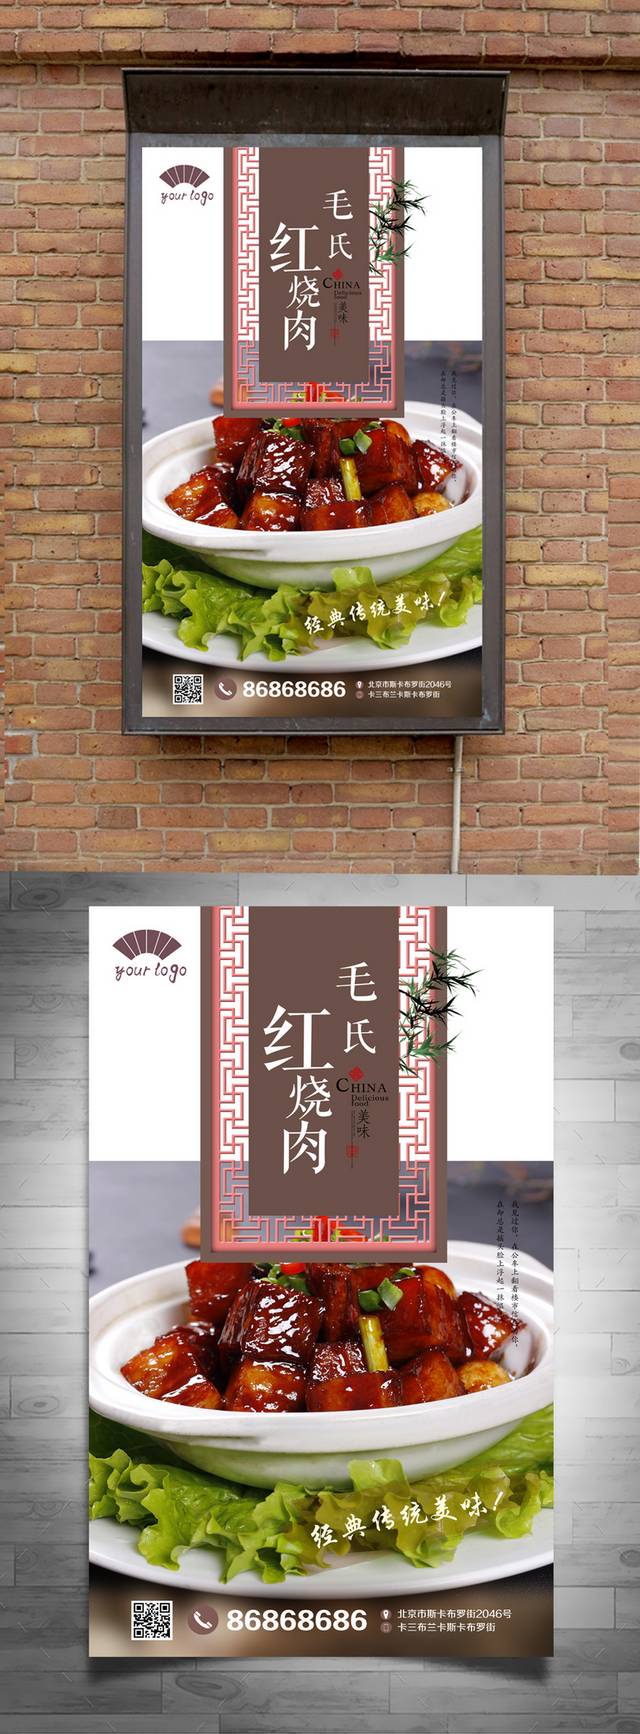 中式高档毛氏红烧肉宣传海报设计psd